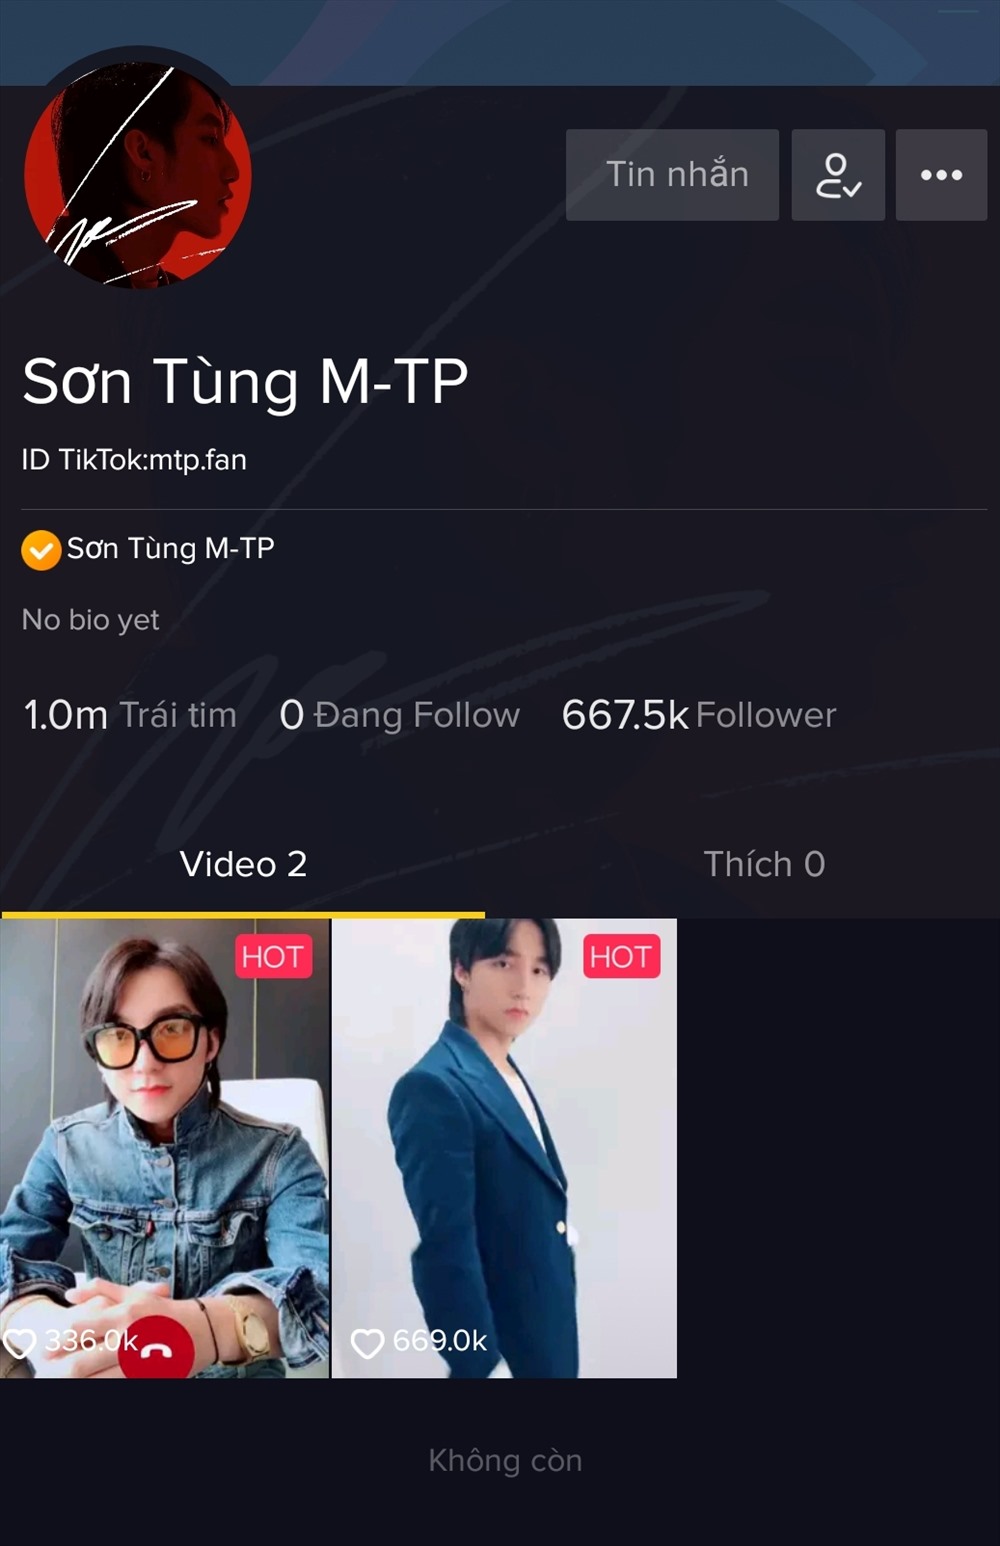 TikTok cũng đầu tư mạnh tay vào các hoạt động truyền thông tại Việt Nam. Những video quảng cáo TikTok với sự góp mặt của nhiều ca sĩ, diễn viên, cầu thủ bóng đá nổi tiếng xuất hiện dày đặc trên mạng xã hội.